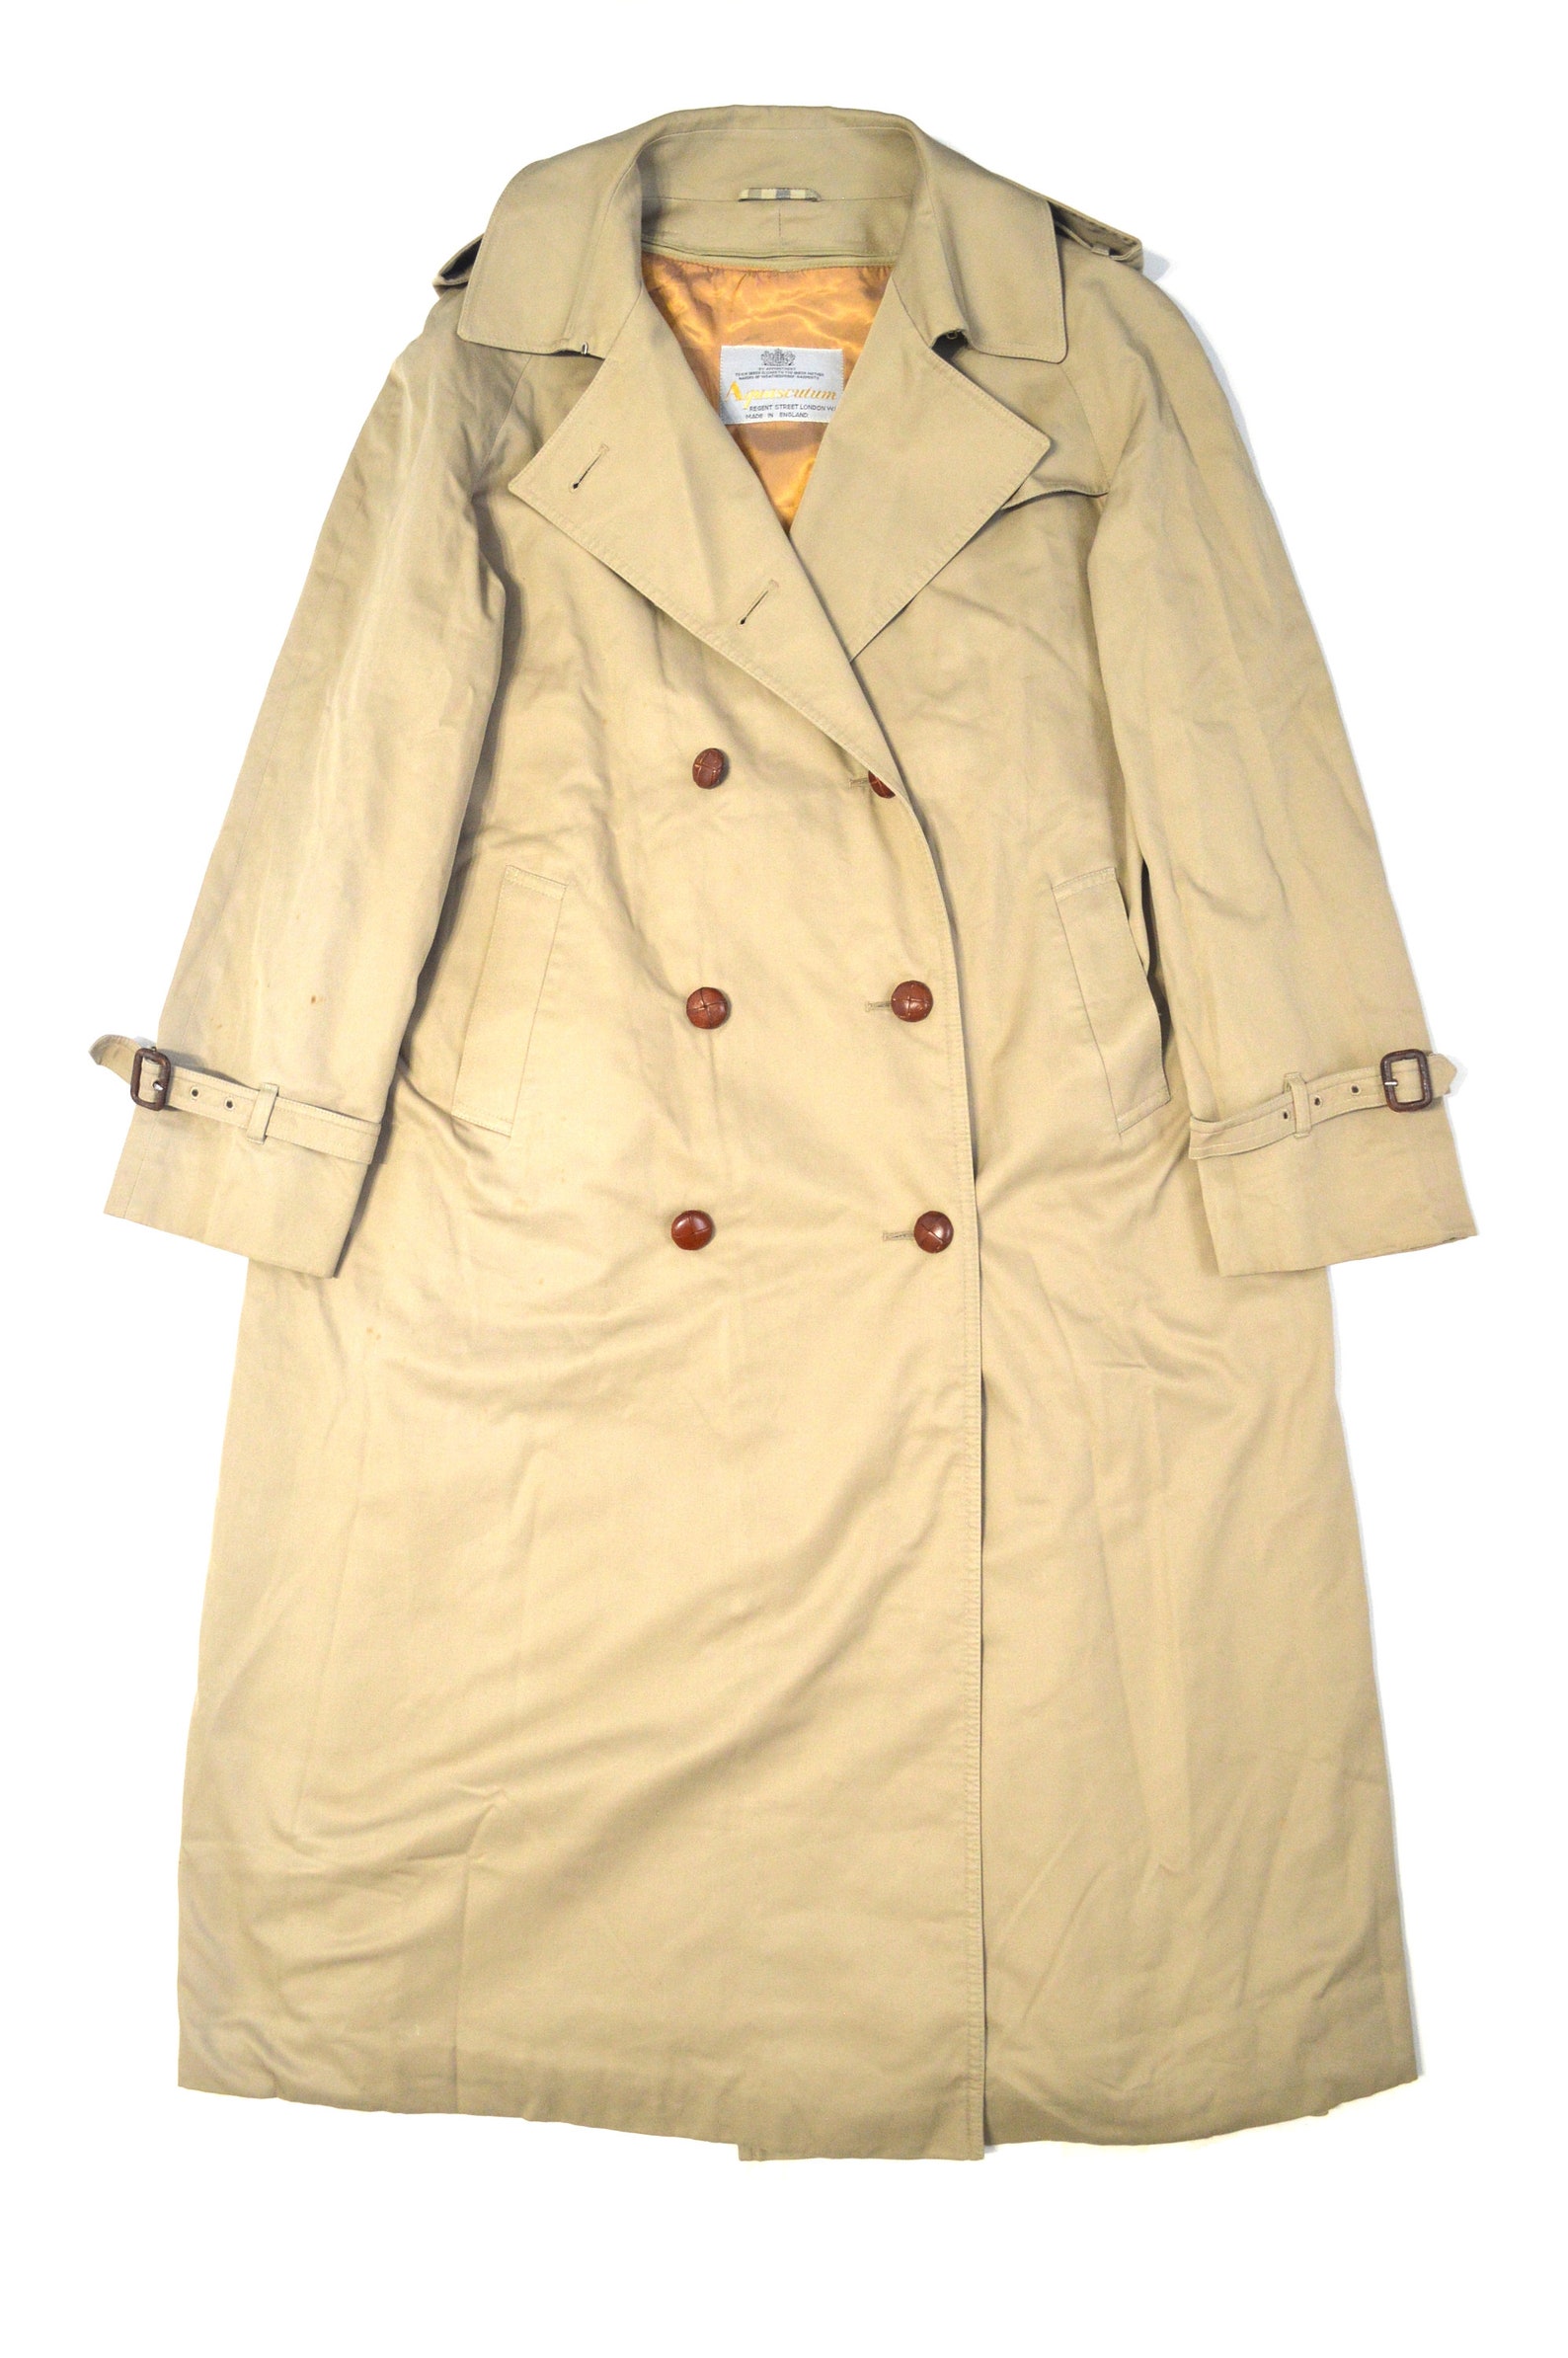 Aquascutum Trench Coat Jacket Lining Beige Size Women's18 - Etsy